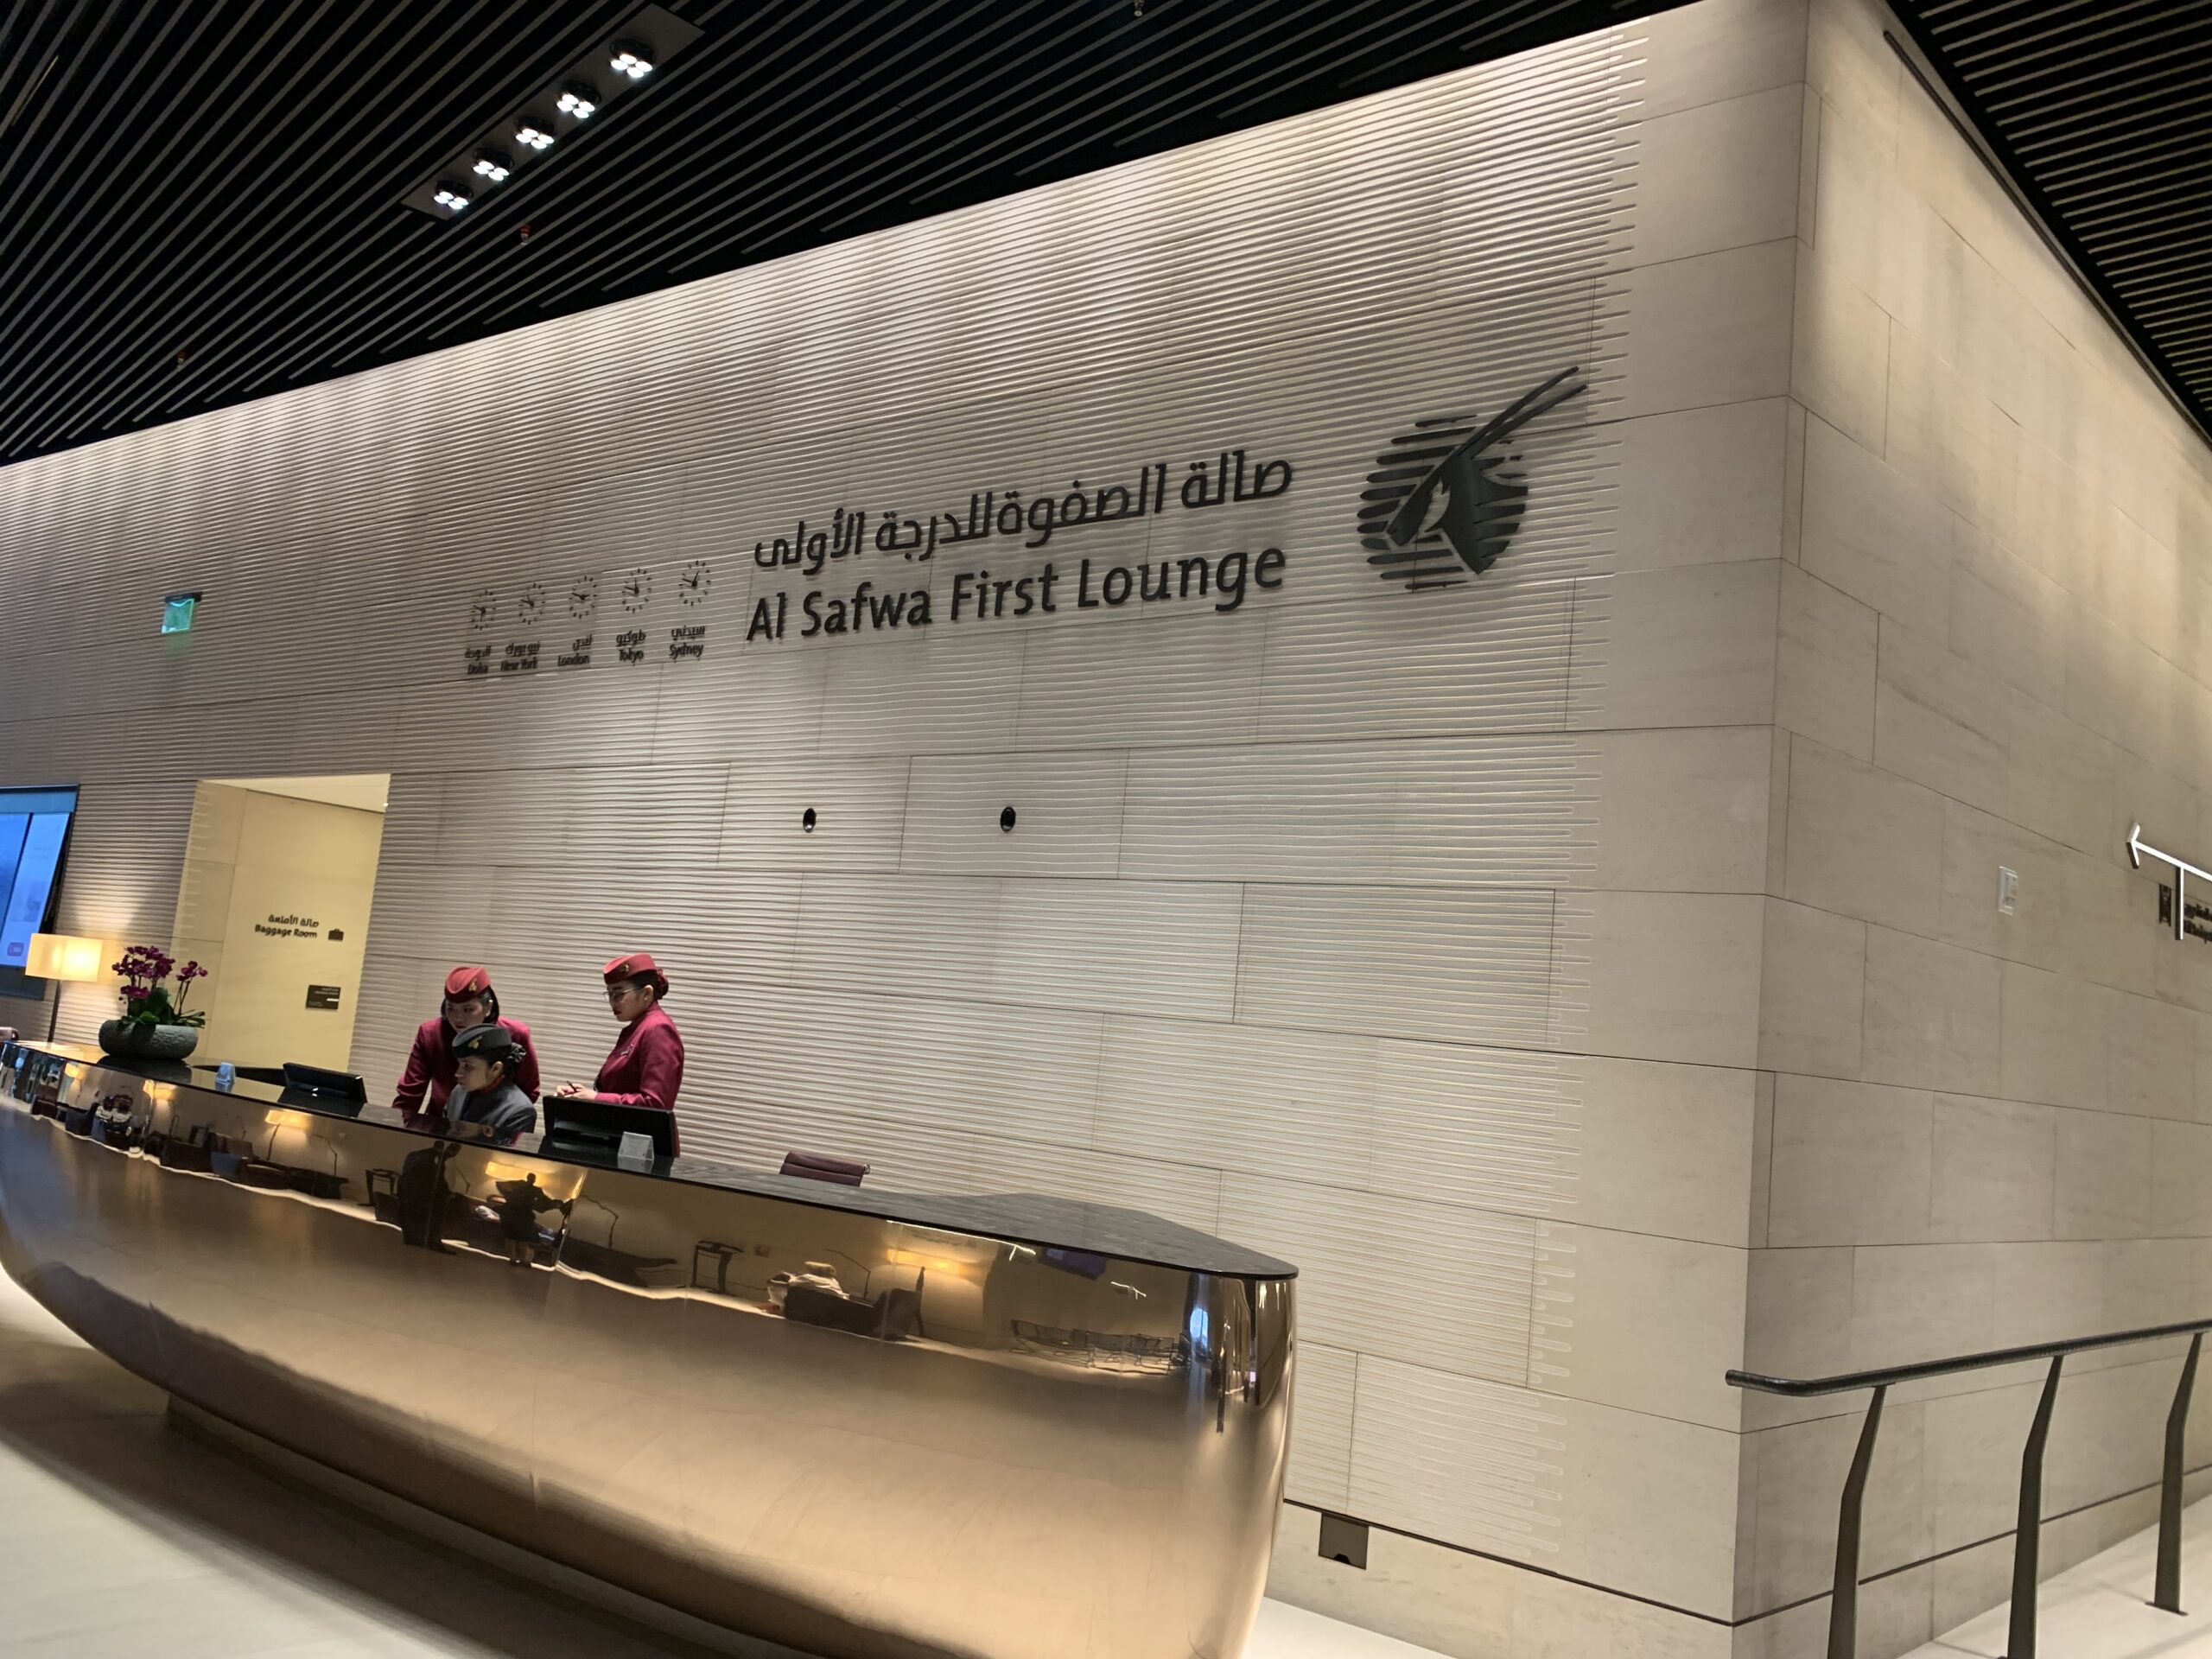 Qatar Airways Al Safwa First Lounge